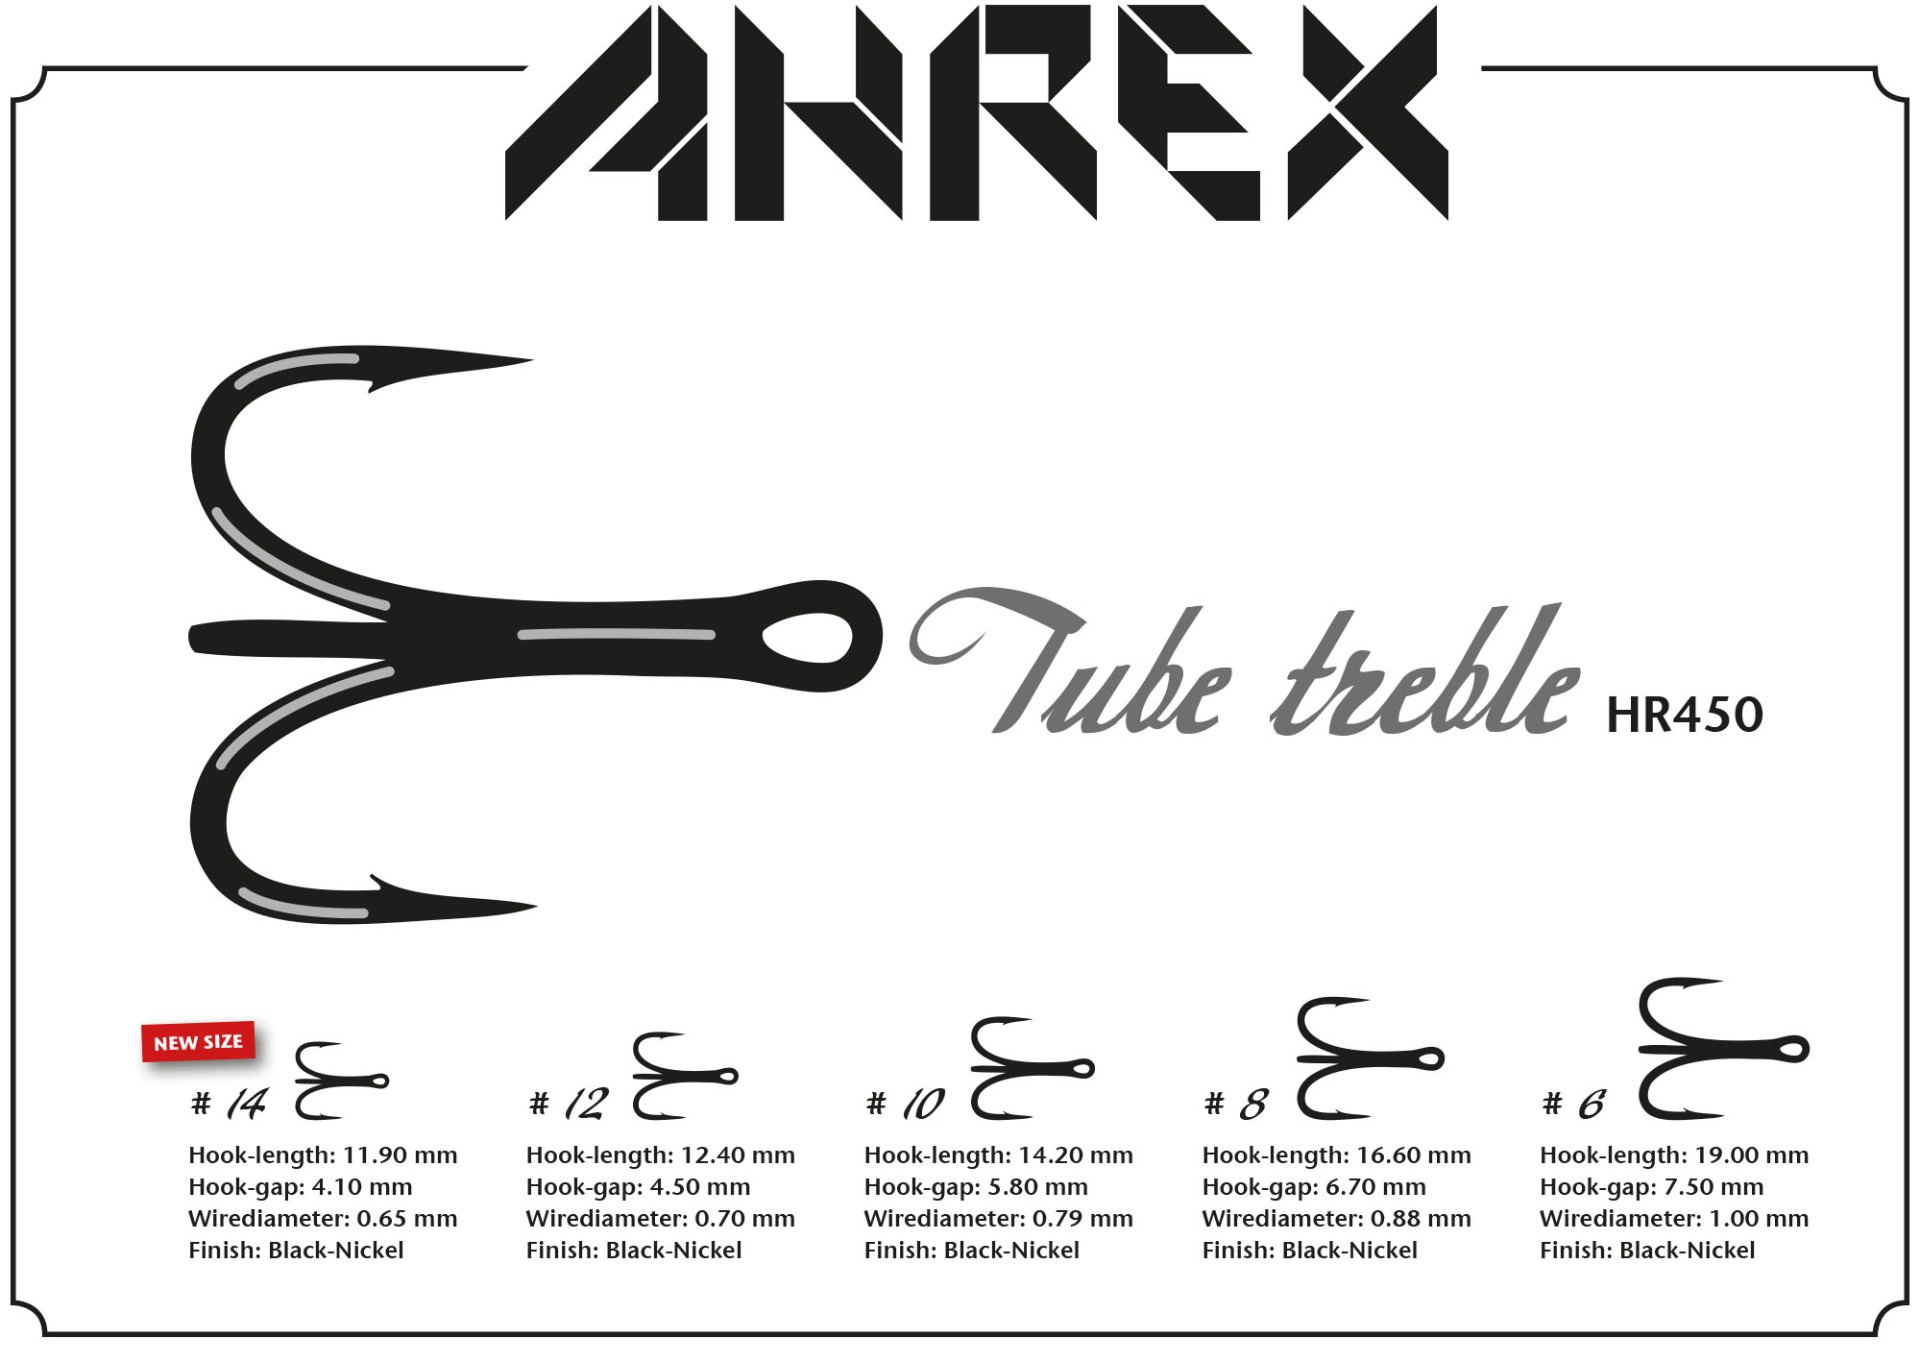 Ahrex Triple Tube #6-#10